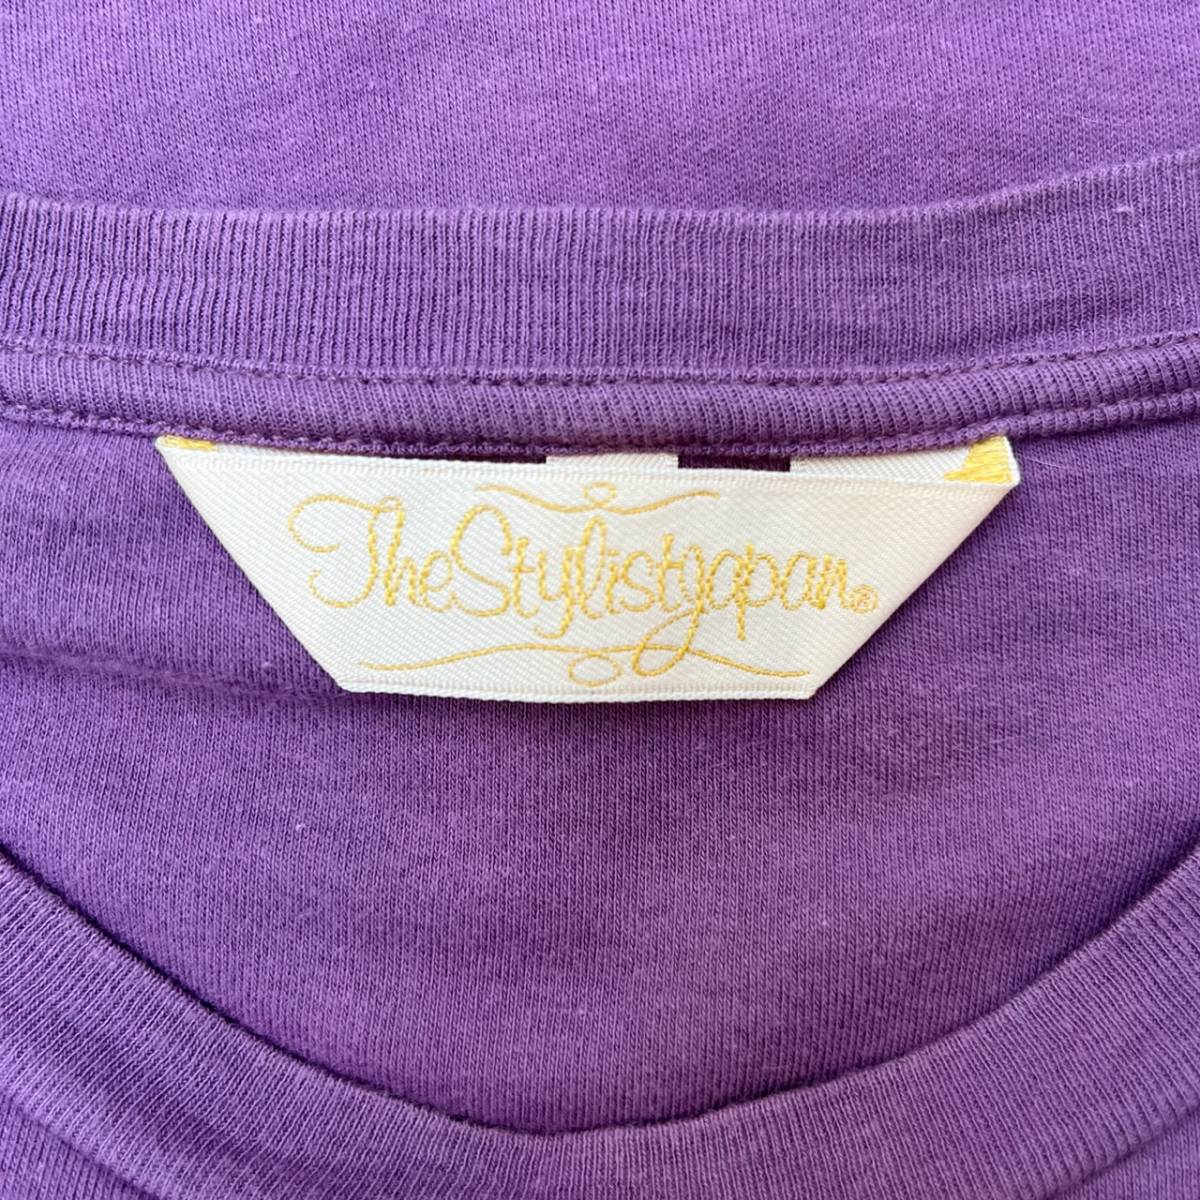 The Stylist Japan ザスタイリストジャパン Sサイズ ポケット Tシャツ ワンポイント刺繍 パープル